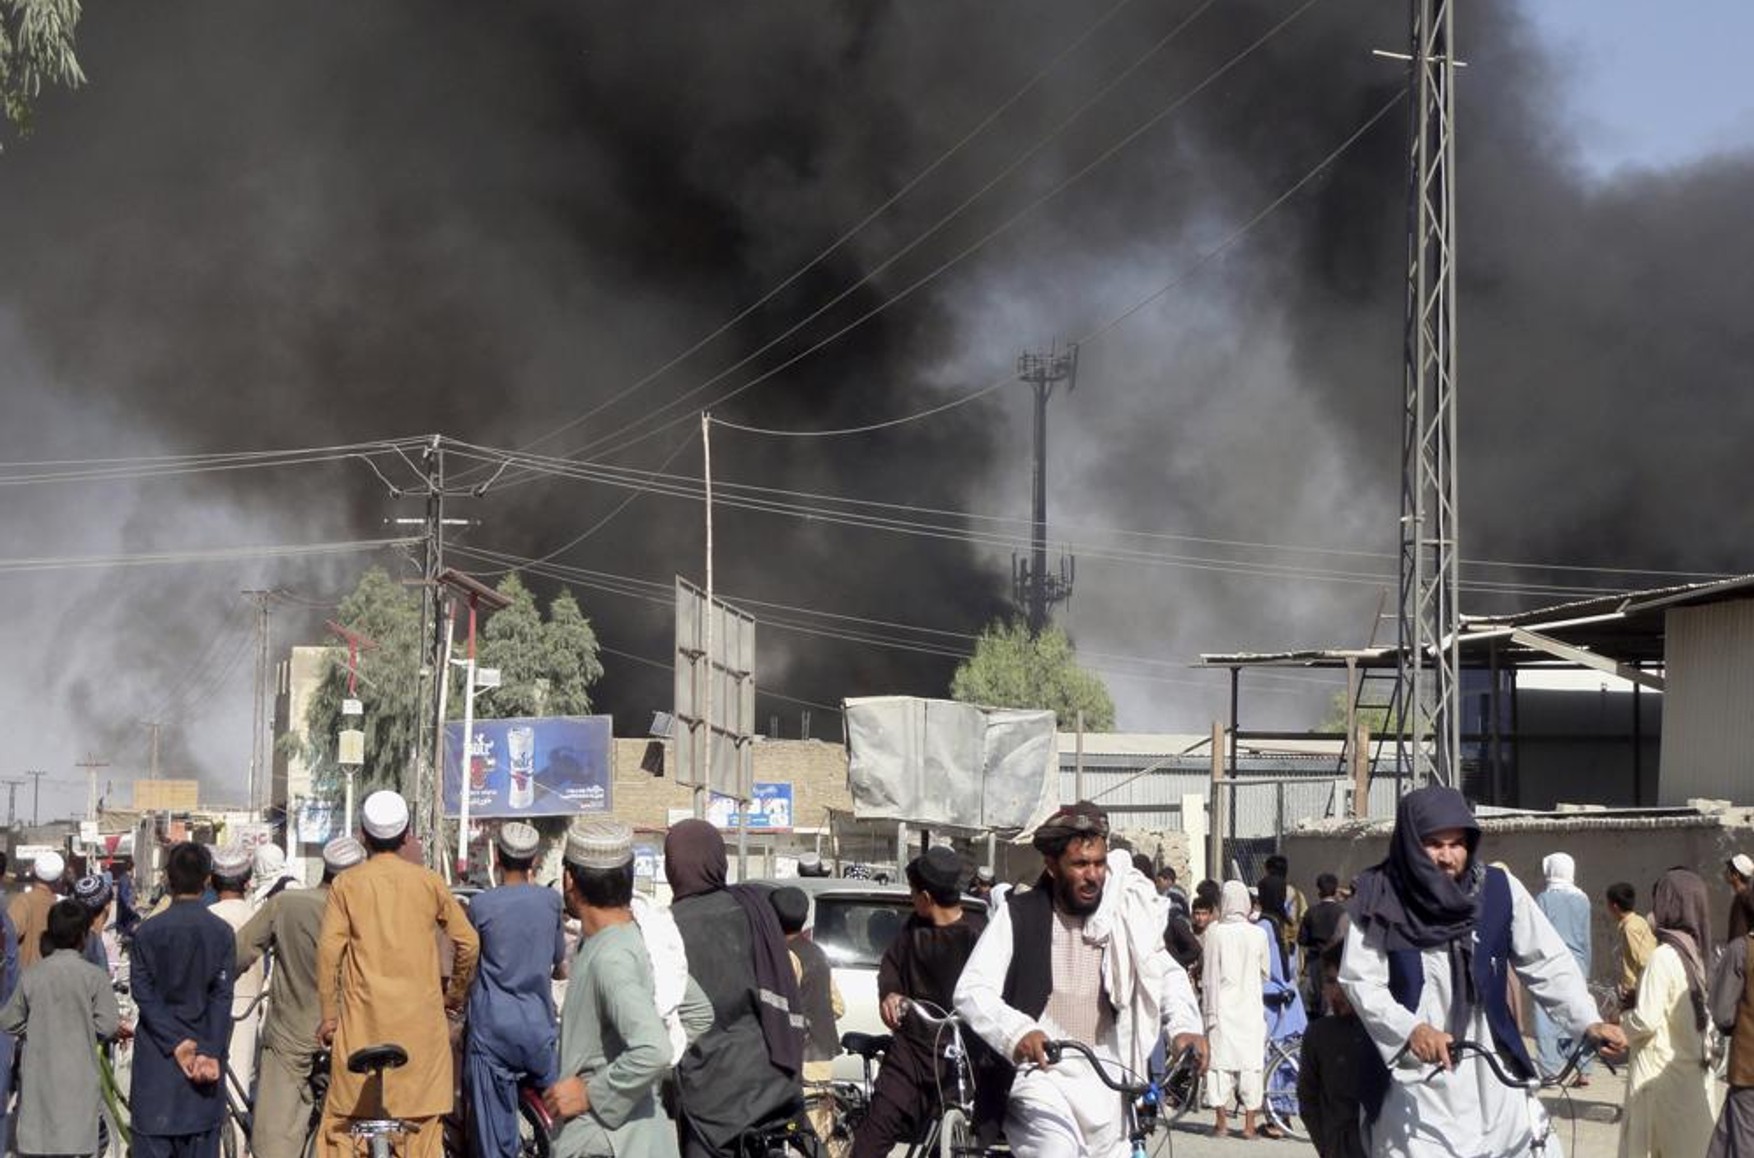 «Талібан» заявив про намір воювати до встановлення в країні влади шаріату. Бойовики в 50 км від Кабула